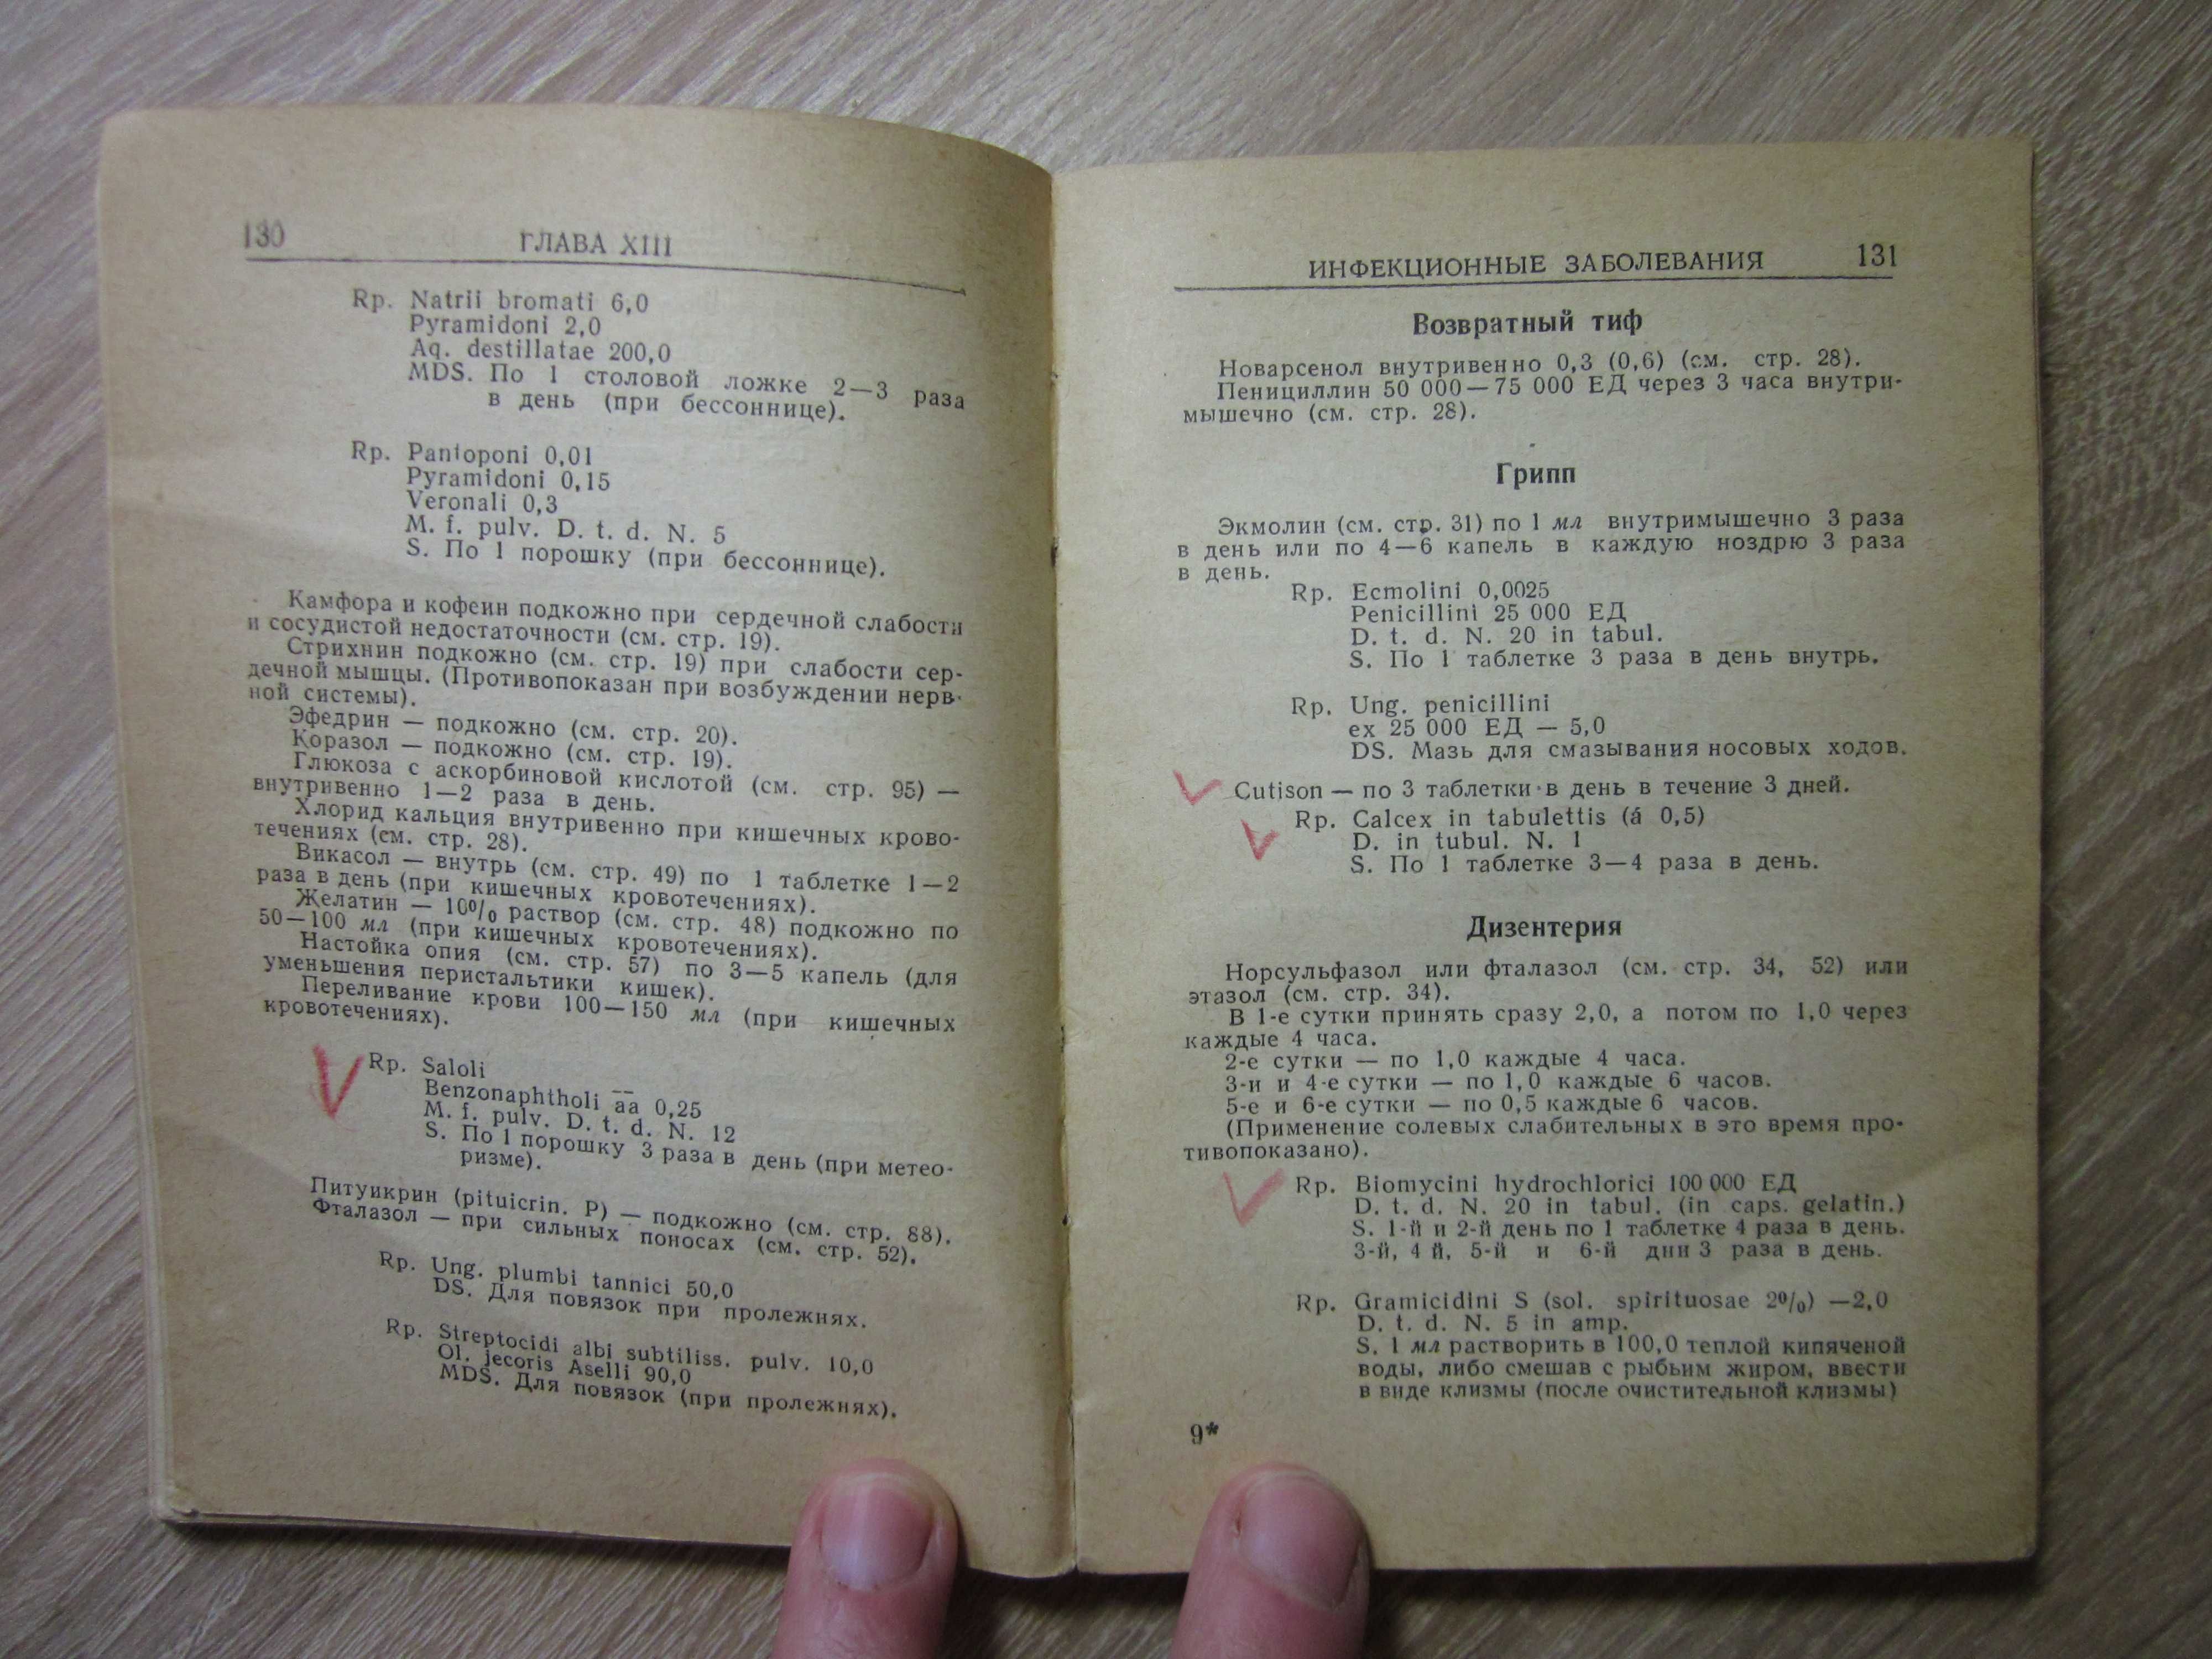 Praescriptiones / Рецептурный справочник 1958 года